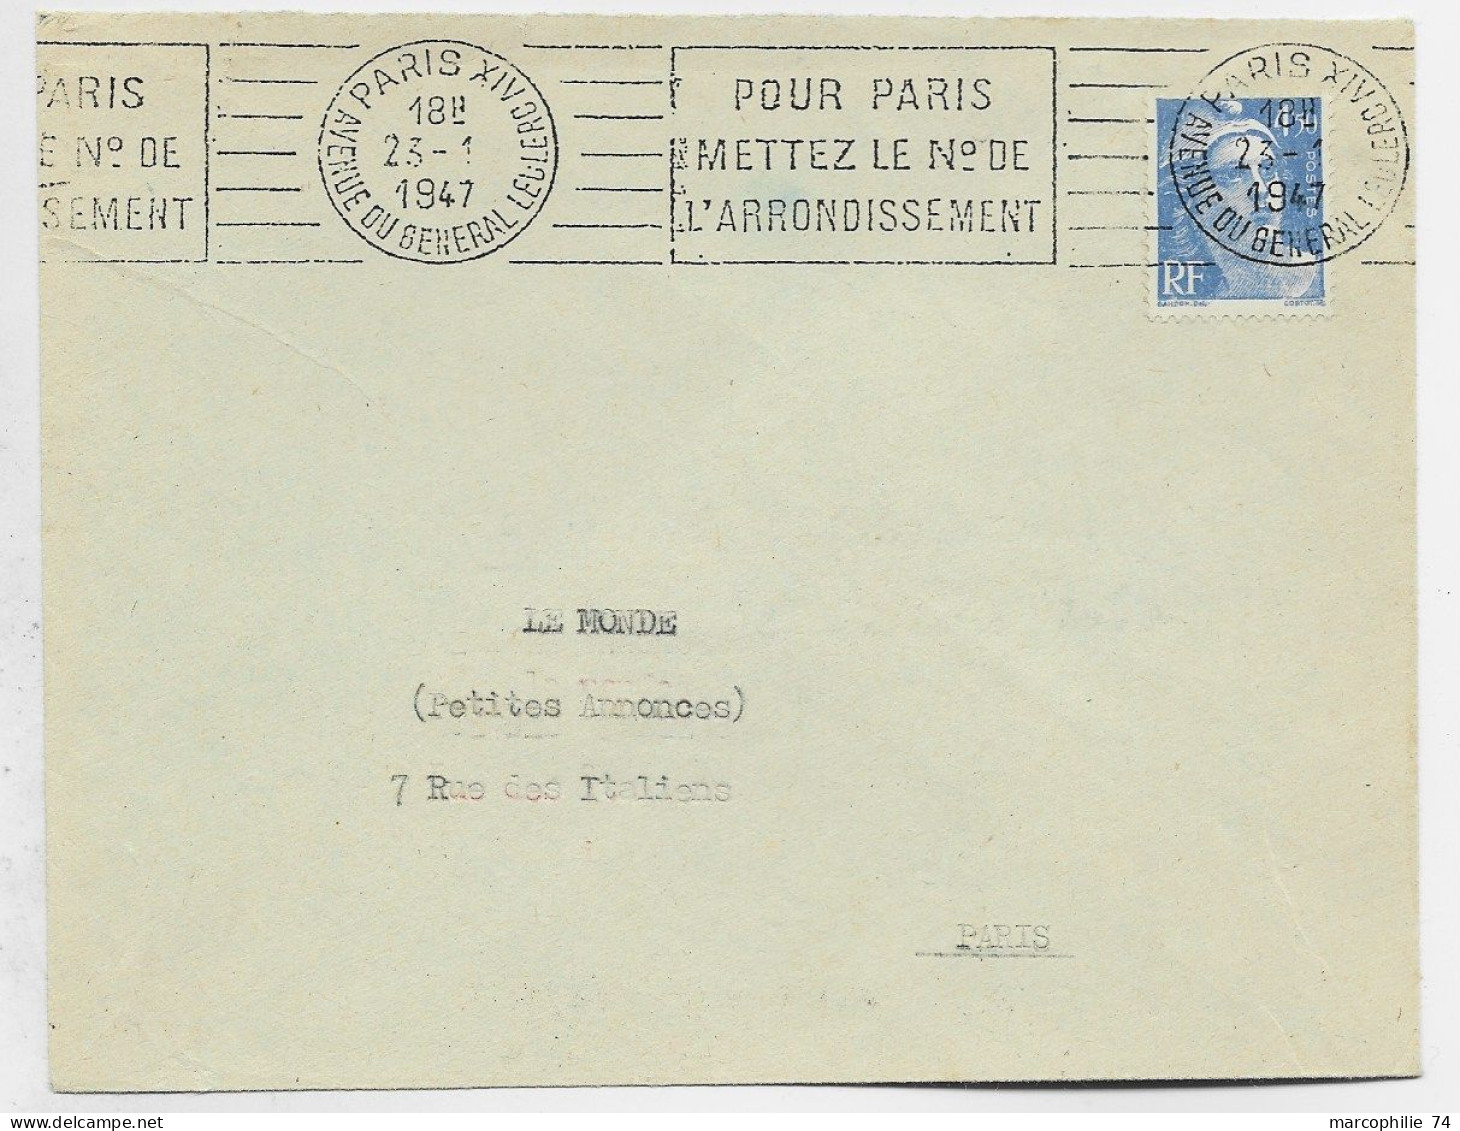 GANDON 4FR50 SEUL LETTRE MANQUE UN RABAT  MEC PARIS XIV 23.1.1947 1ER JOUR DU TIMBRE - 1945-54 Marianne Of Gandon